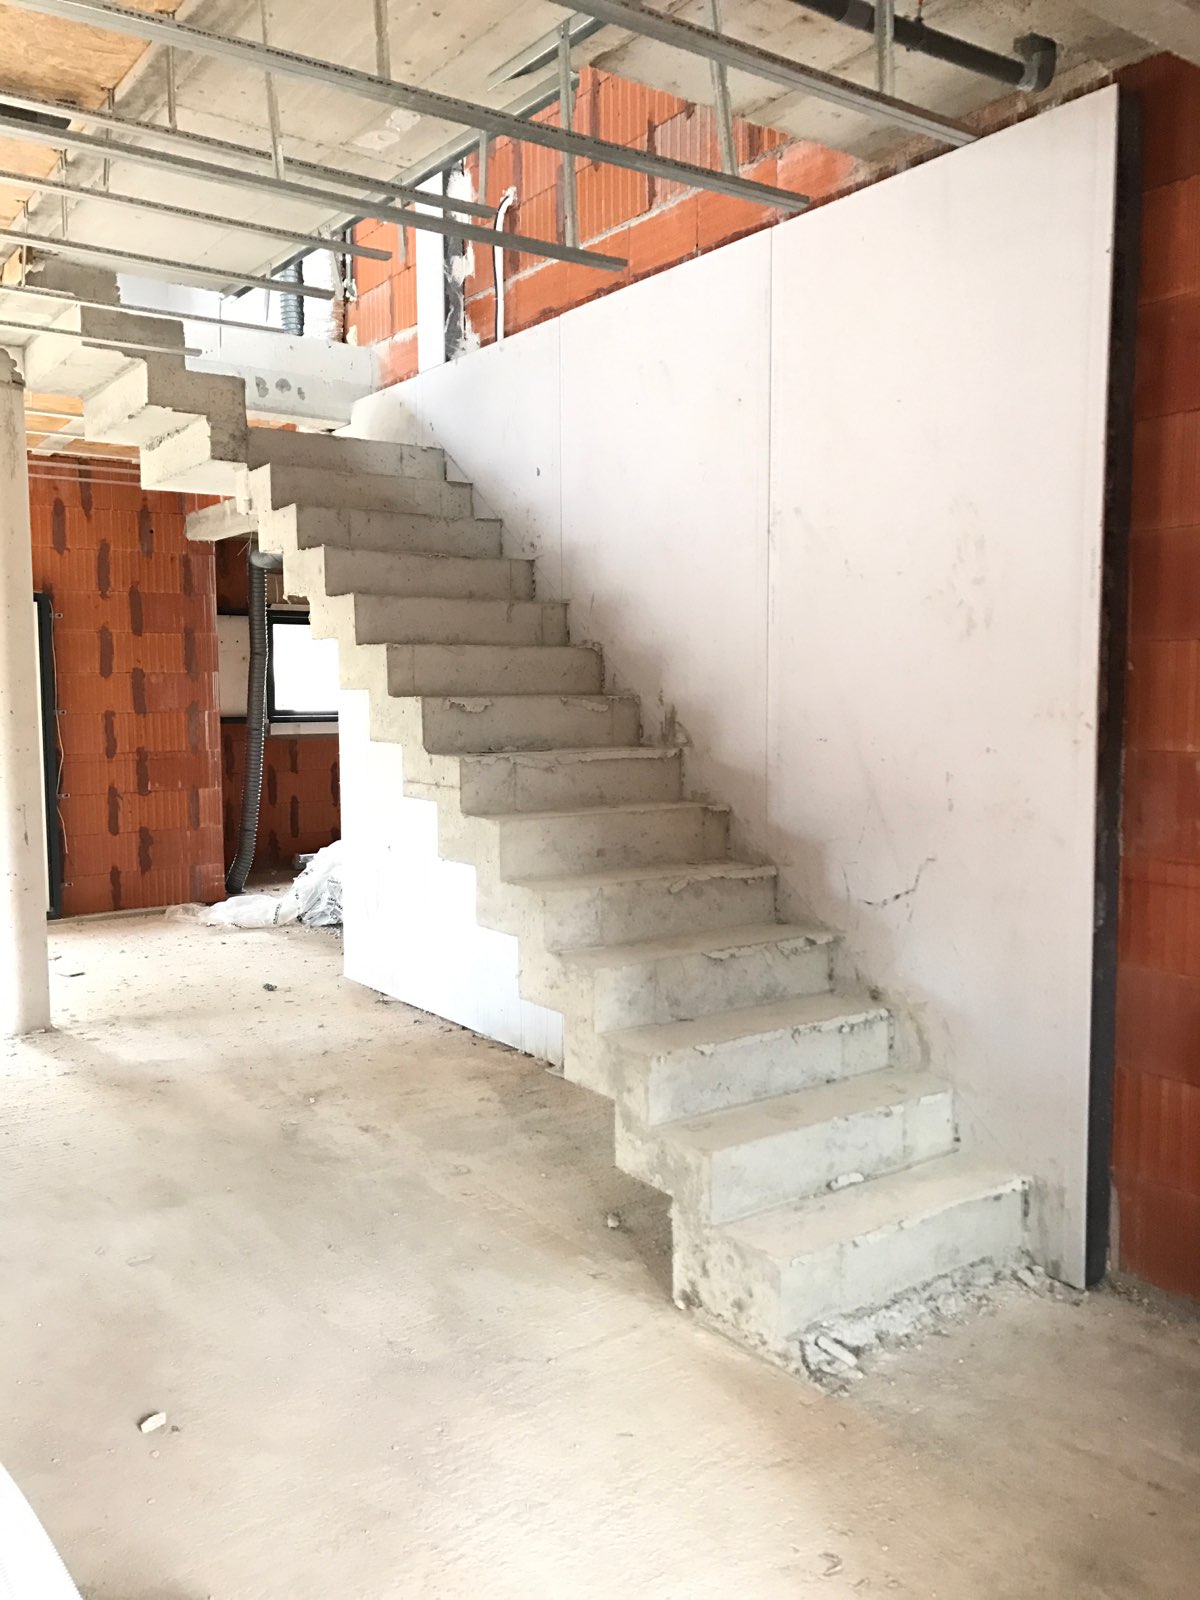 Escalier à crémaillère en beton, coulée en 40 minutes, dans une maison en cours de réalisation à Vailhauquès entre Paulan et Saint-Mathieu-de-Tréviers.